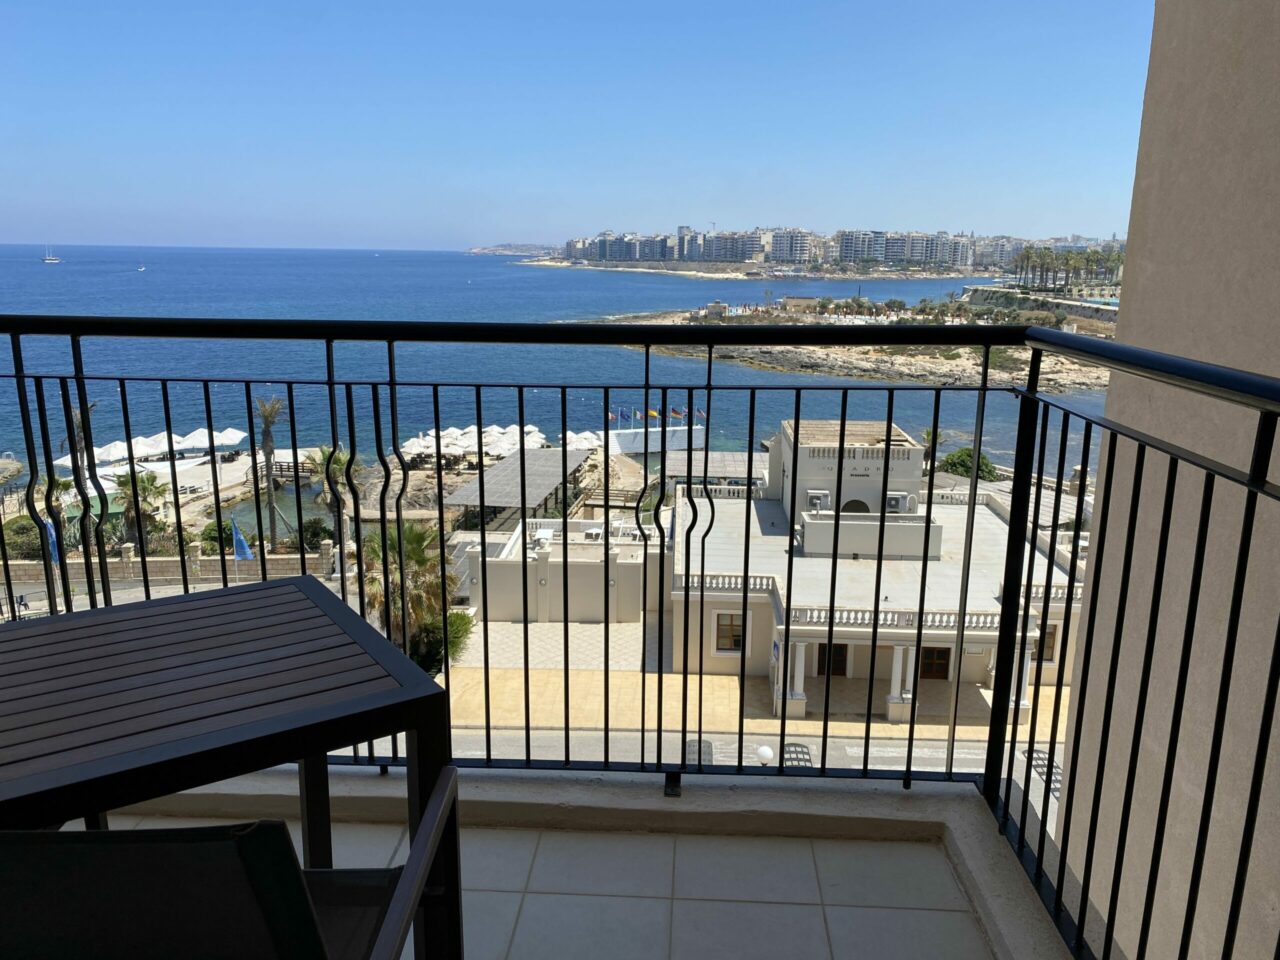 Balcony at The Westin Dragonara Resort hotel